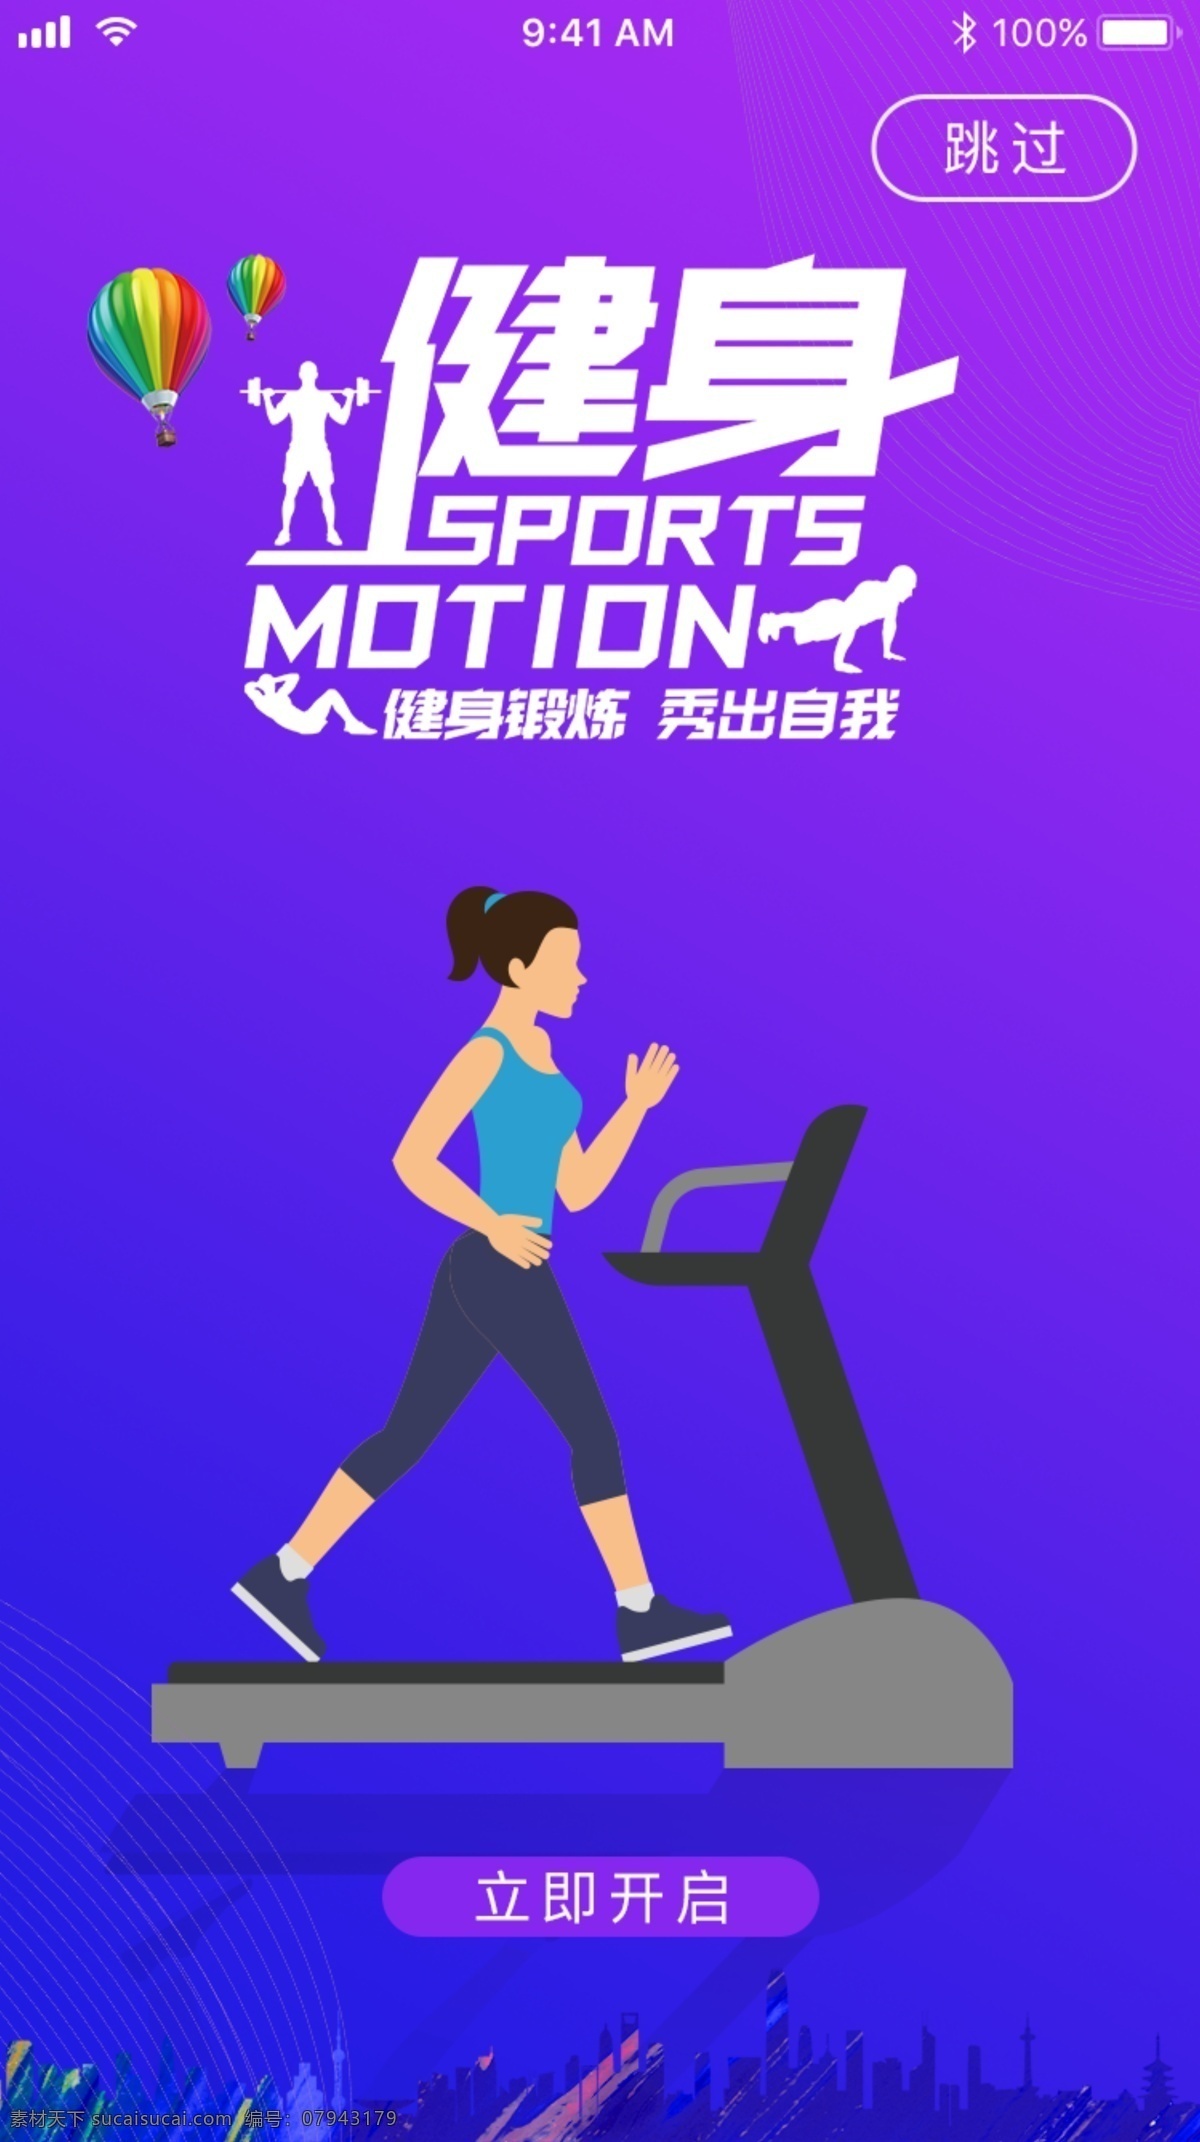 手机 app 跑步 专题 页 蓝色 紫色 锻炼 健身 闪屏 专题页启动页 移动界面设计 手机界面